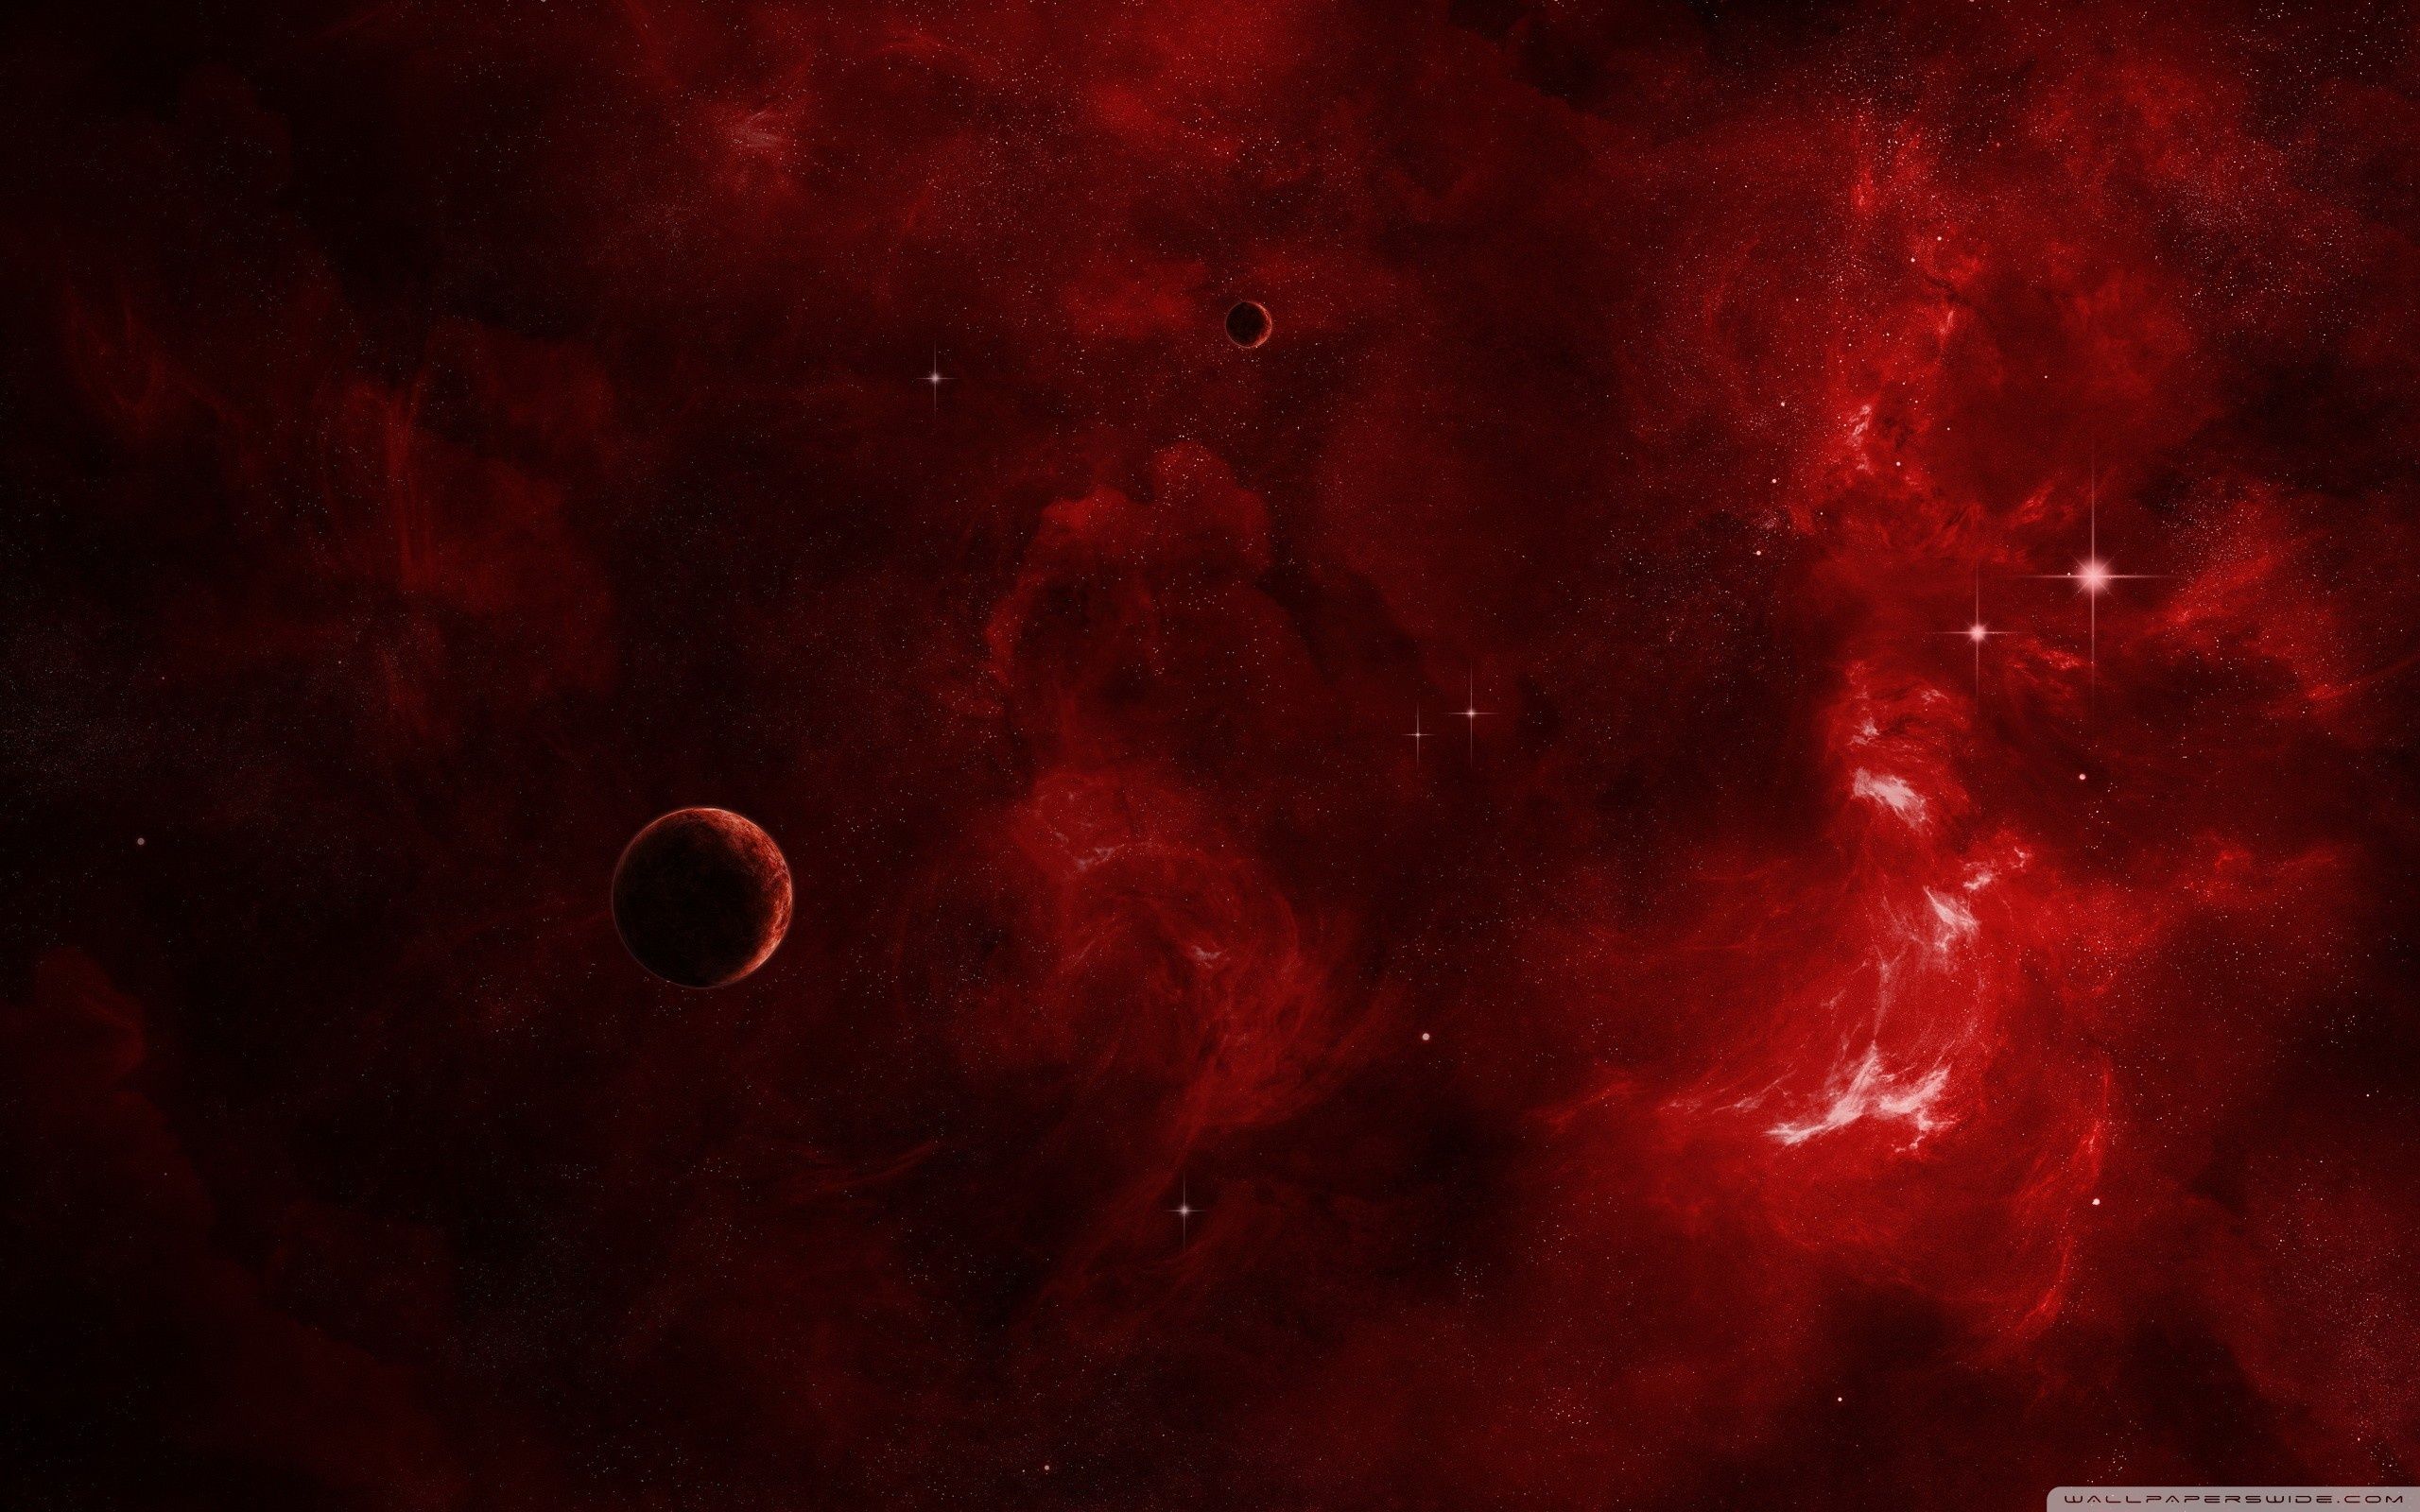 Hình nền vũ trụ đỏ - Hình nền vũ trụ đỏ đẹp như mơ này sẽ khiến cho bạn muốn xem đi xem lại mãi mãi. Tận hưởng cảm giác rò rỉ, đầy màu sắc của tầm vóc khổng lồ của vũ trụ.